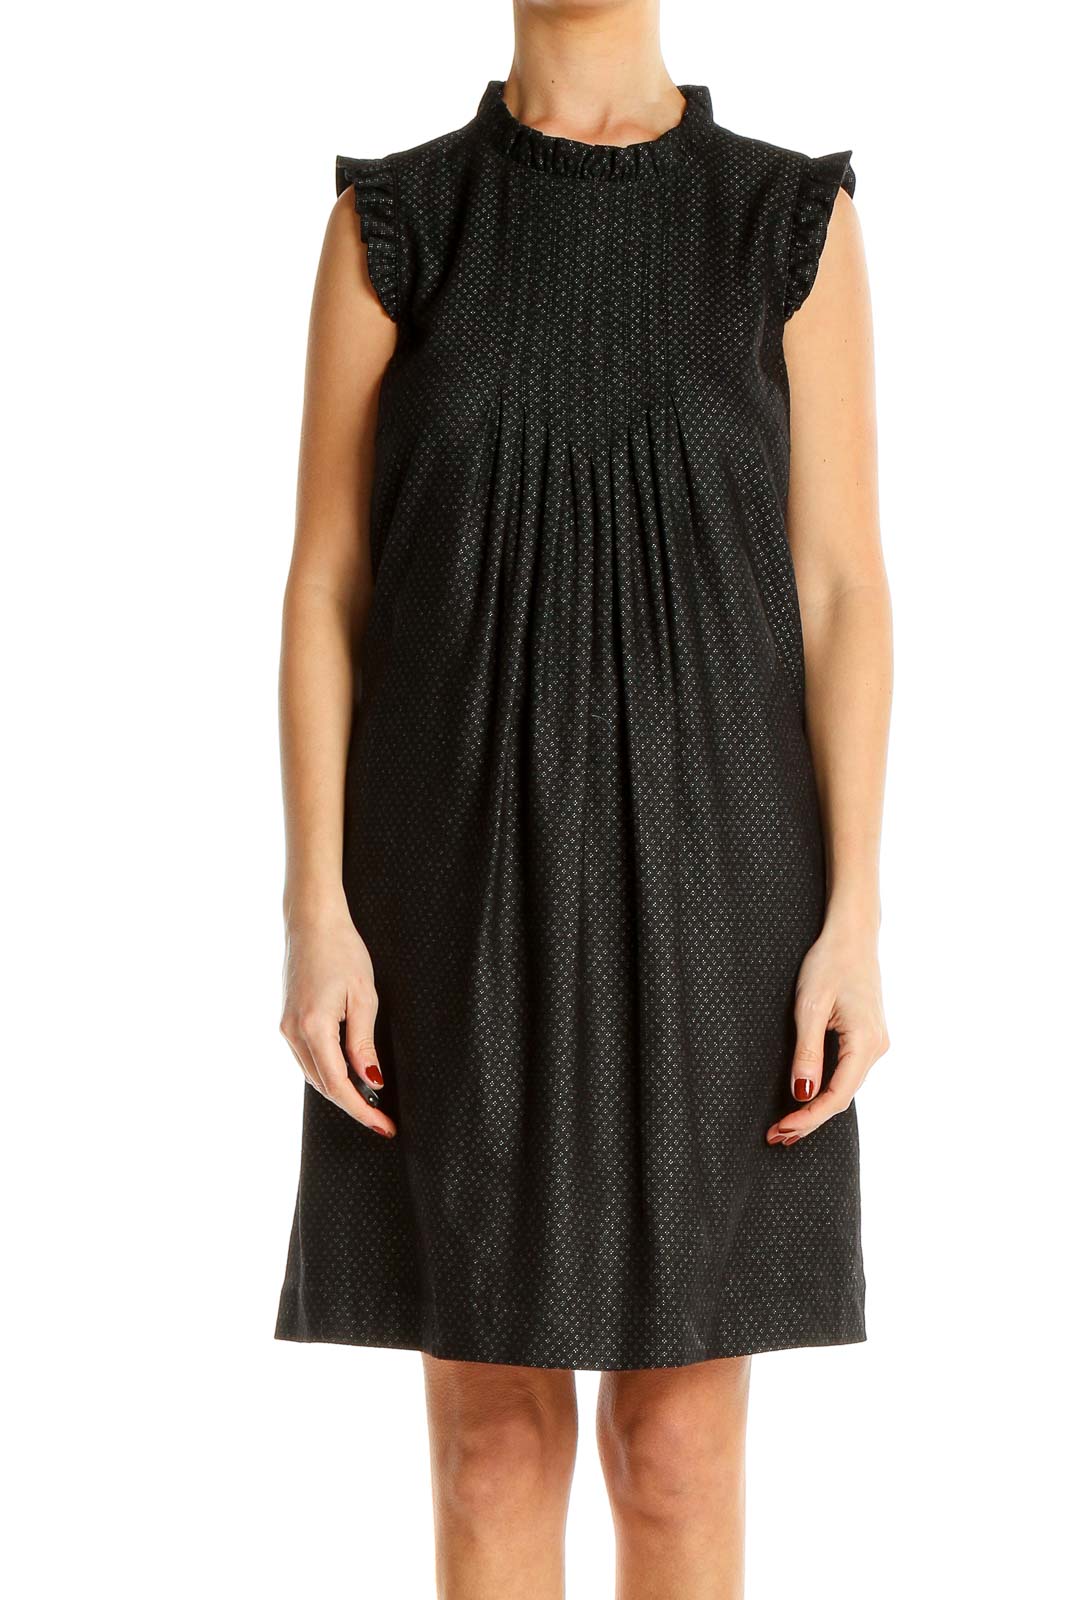 Black Textured Mini Dress Front